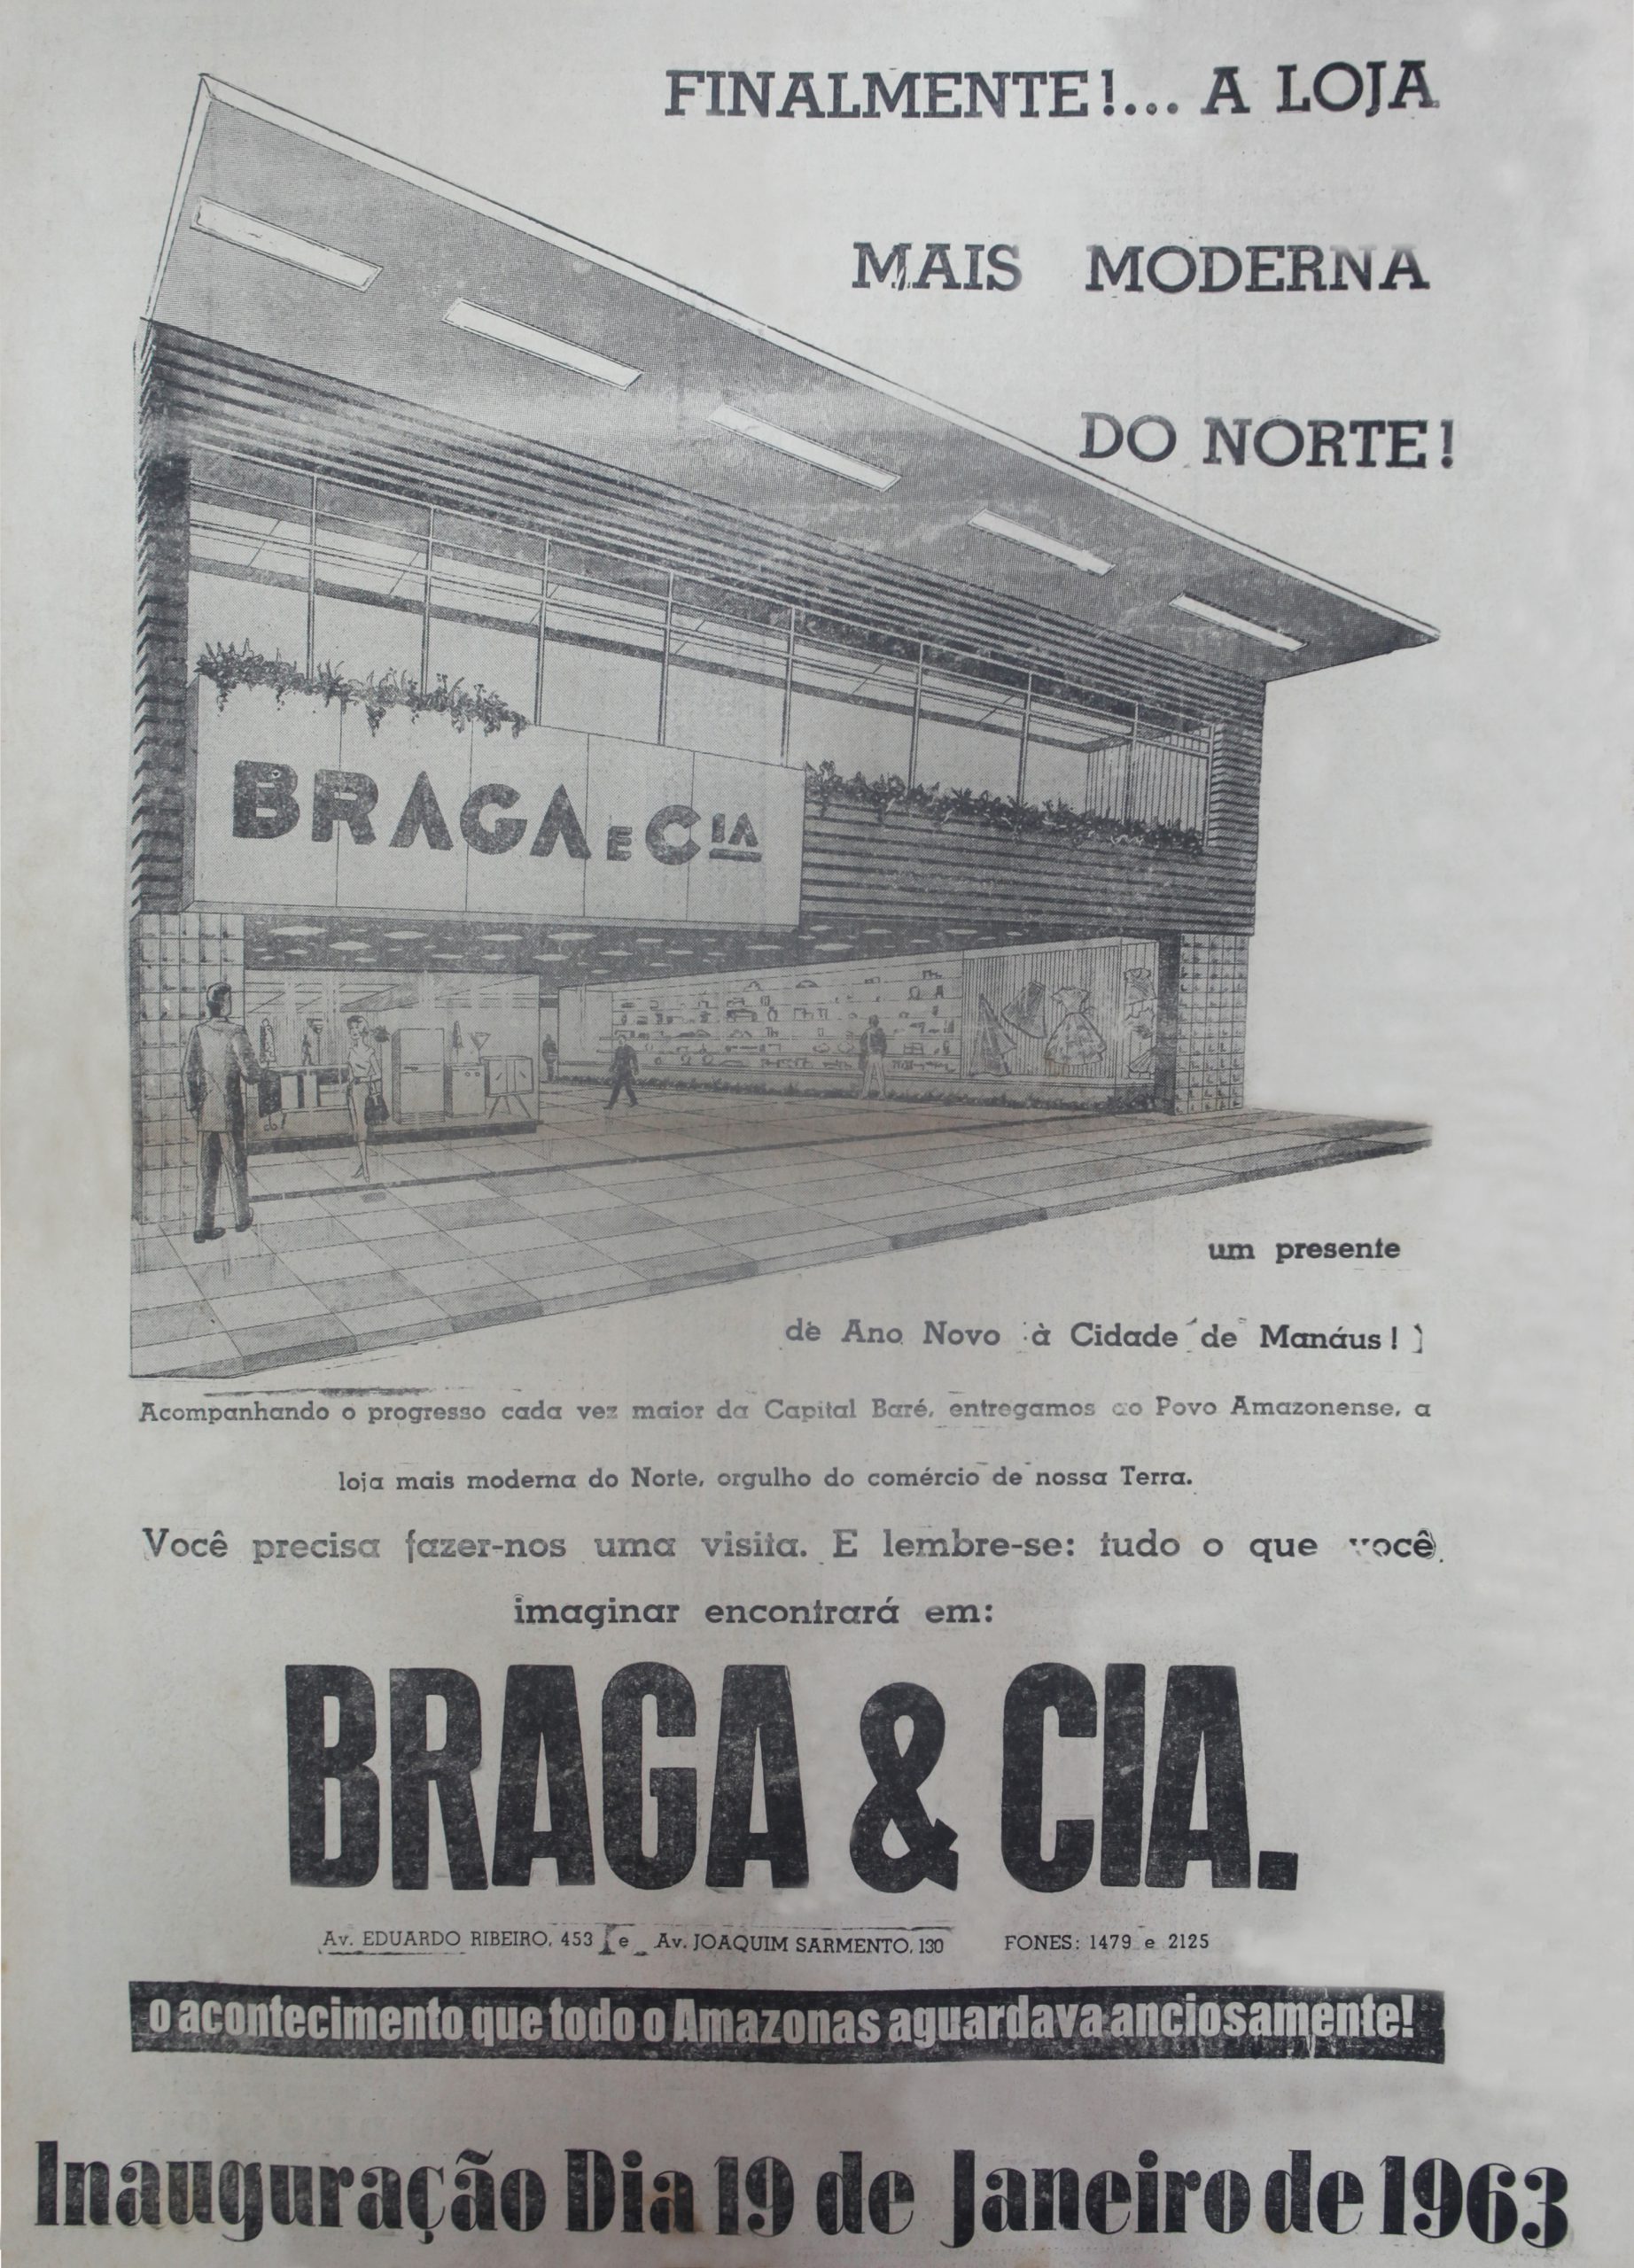 Inauguração da Loja Braga e Cia